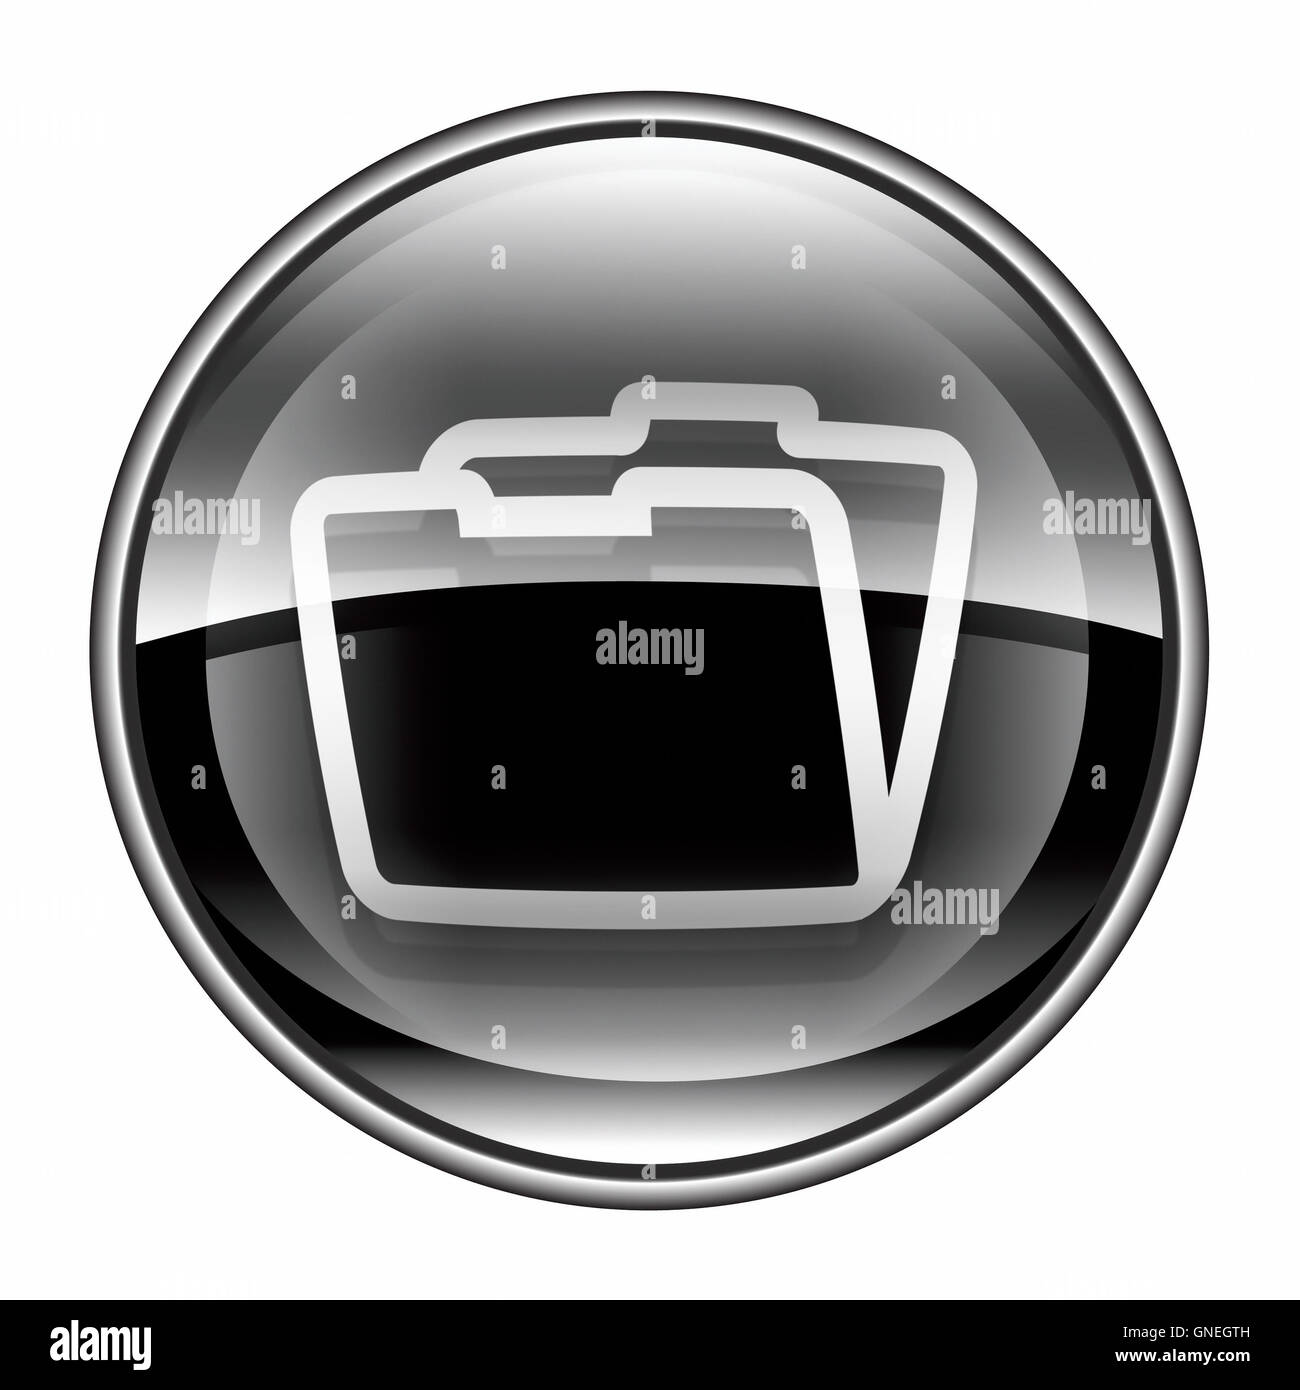 Folder icon black, isolated on white background Stock Photo